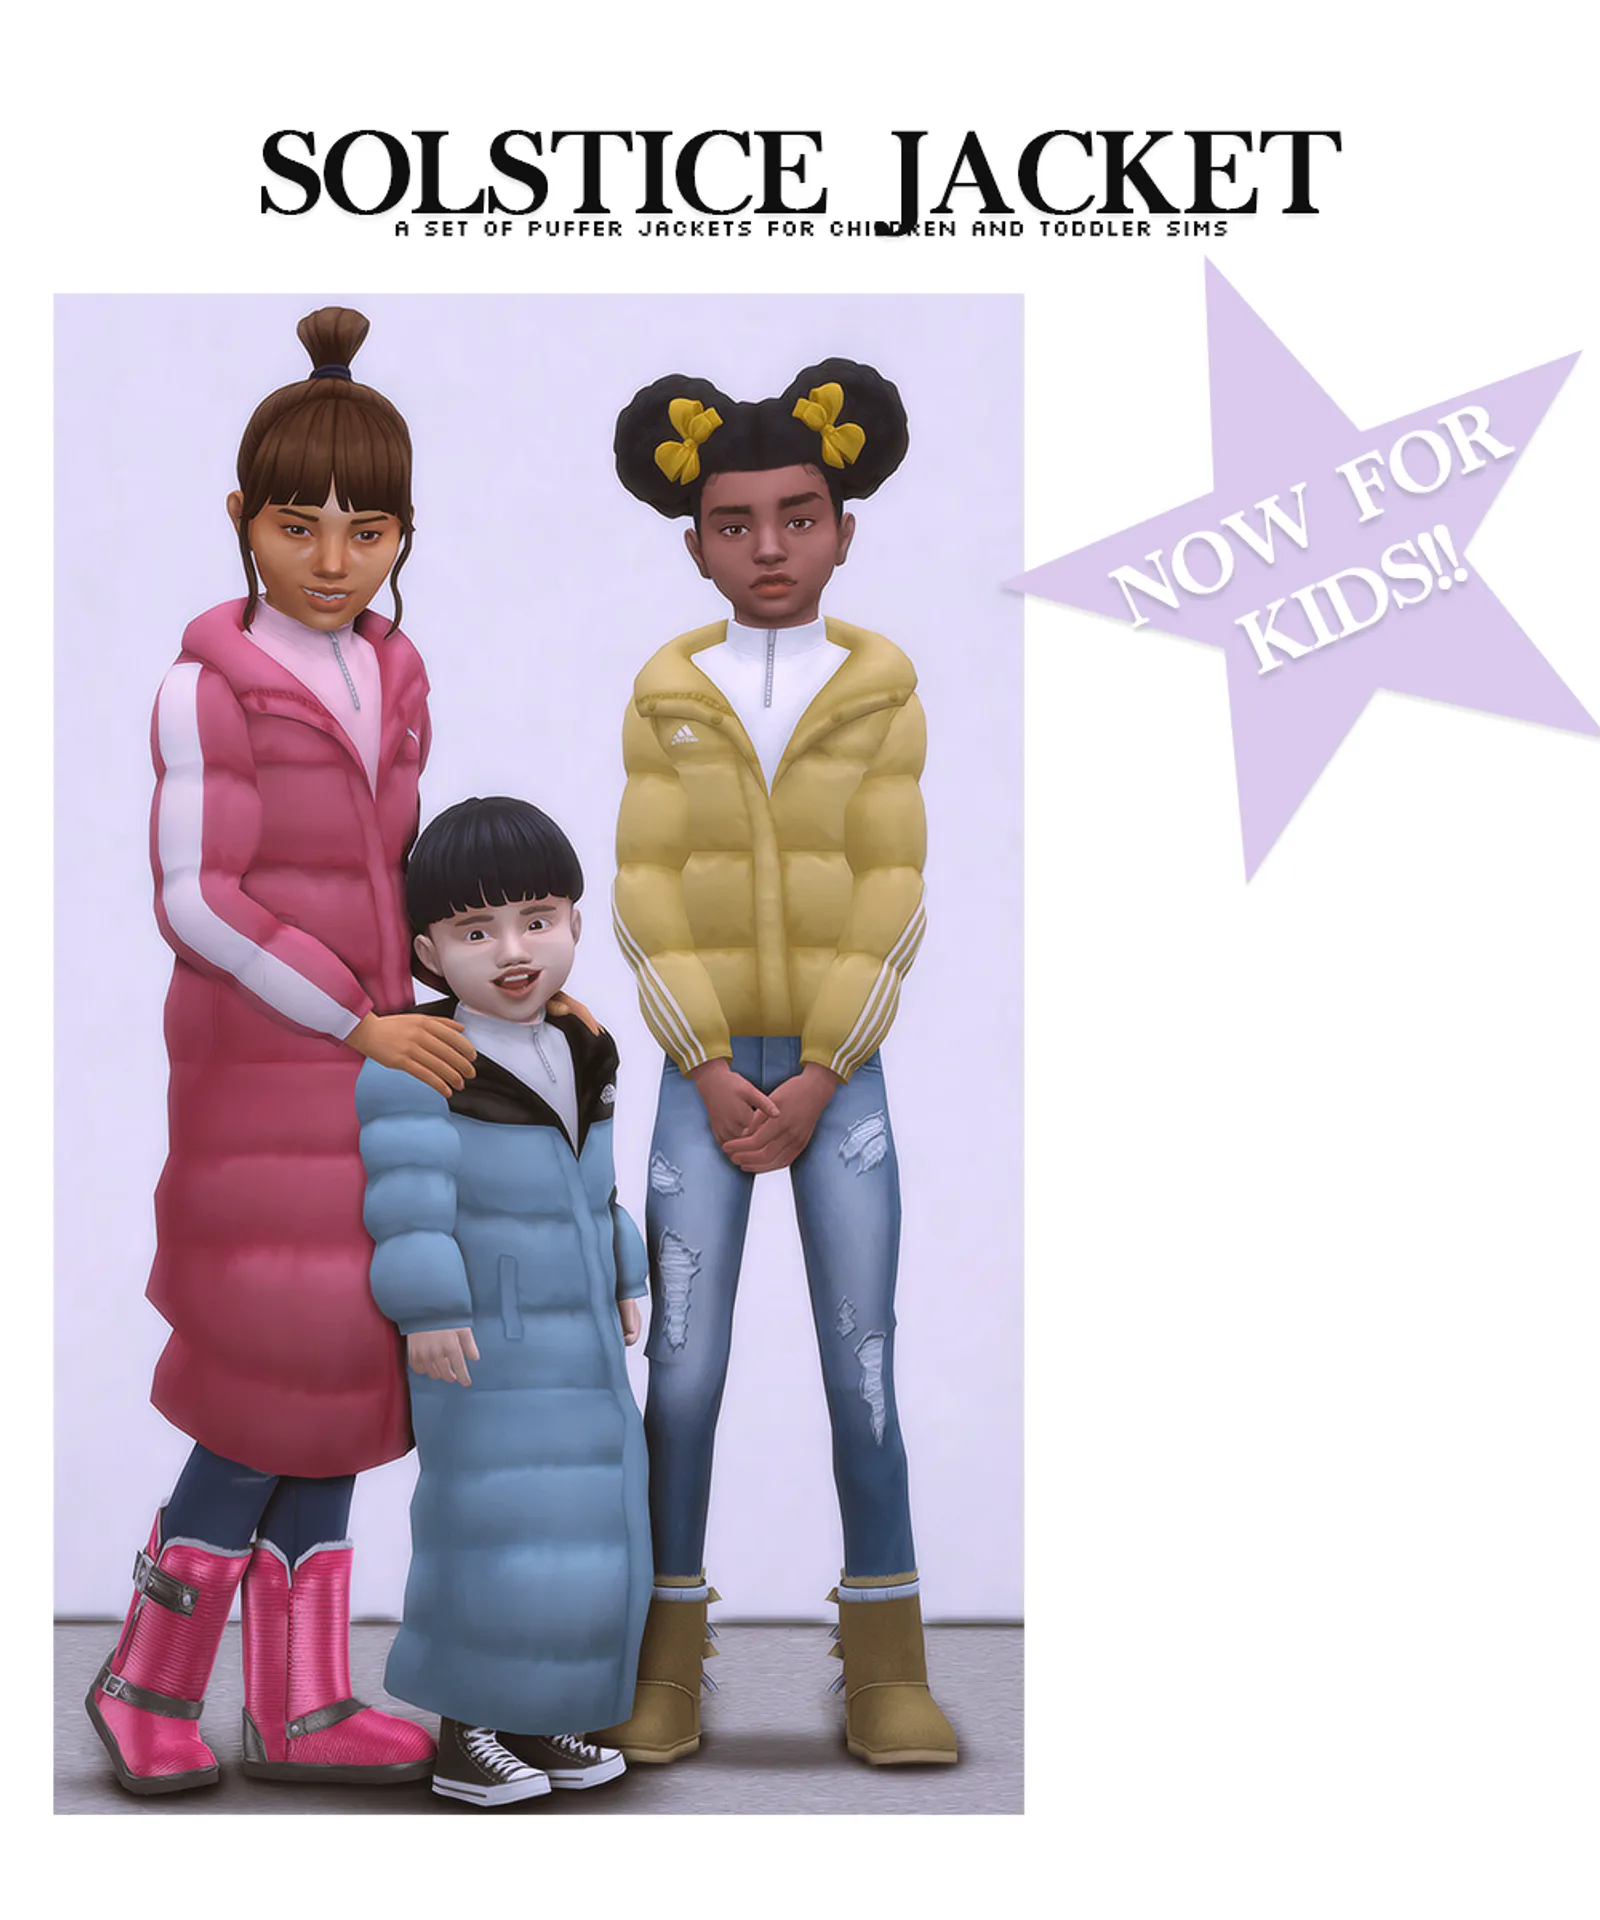 Solstice Jacket for Kids by @nucrests